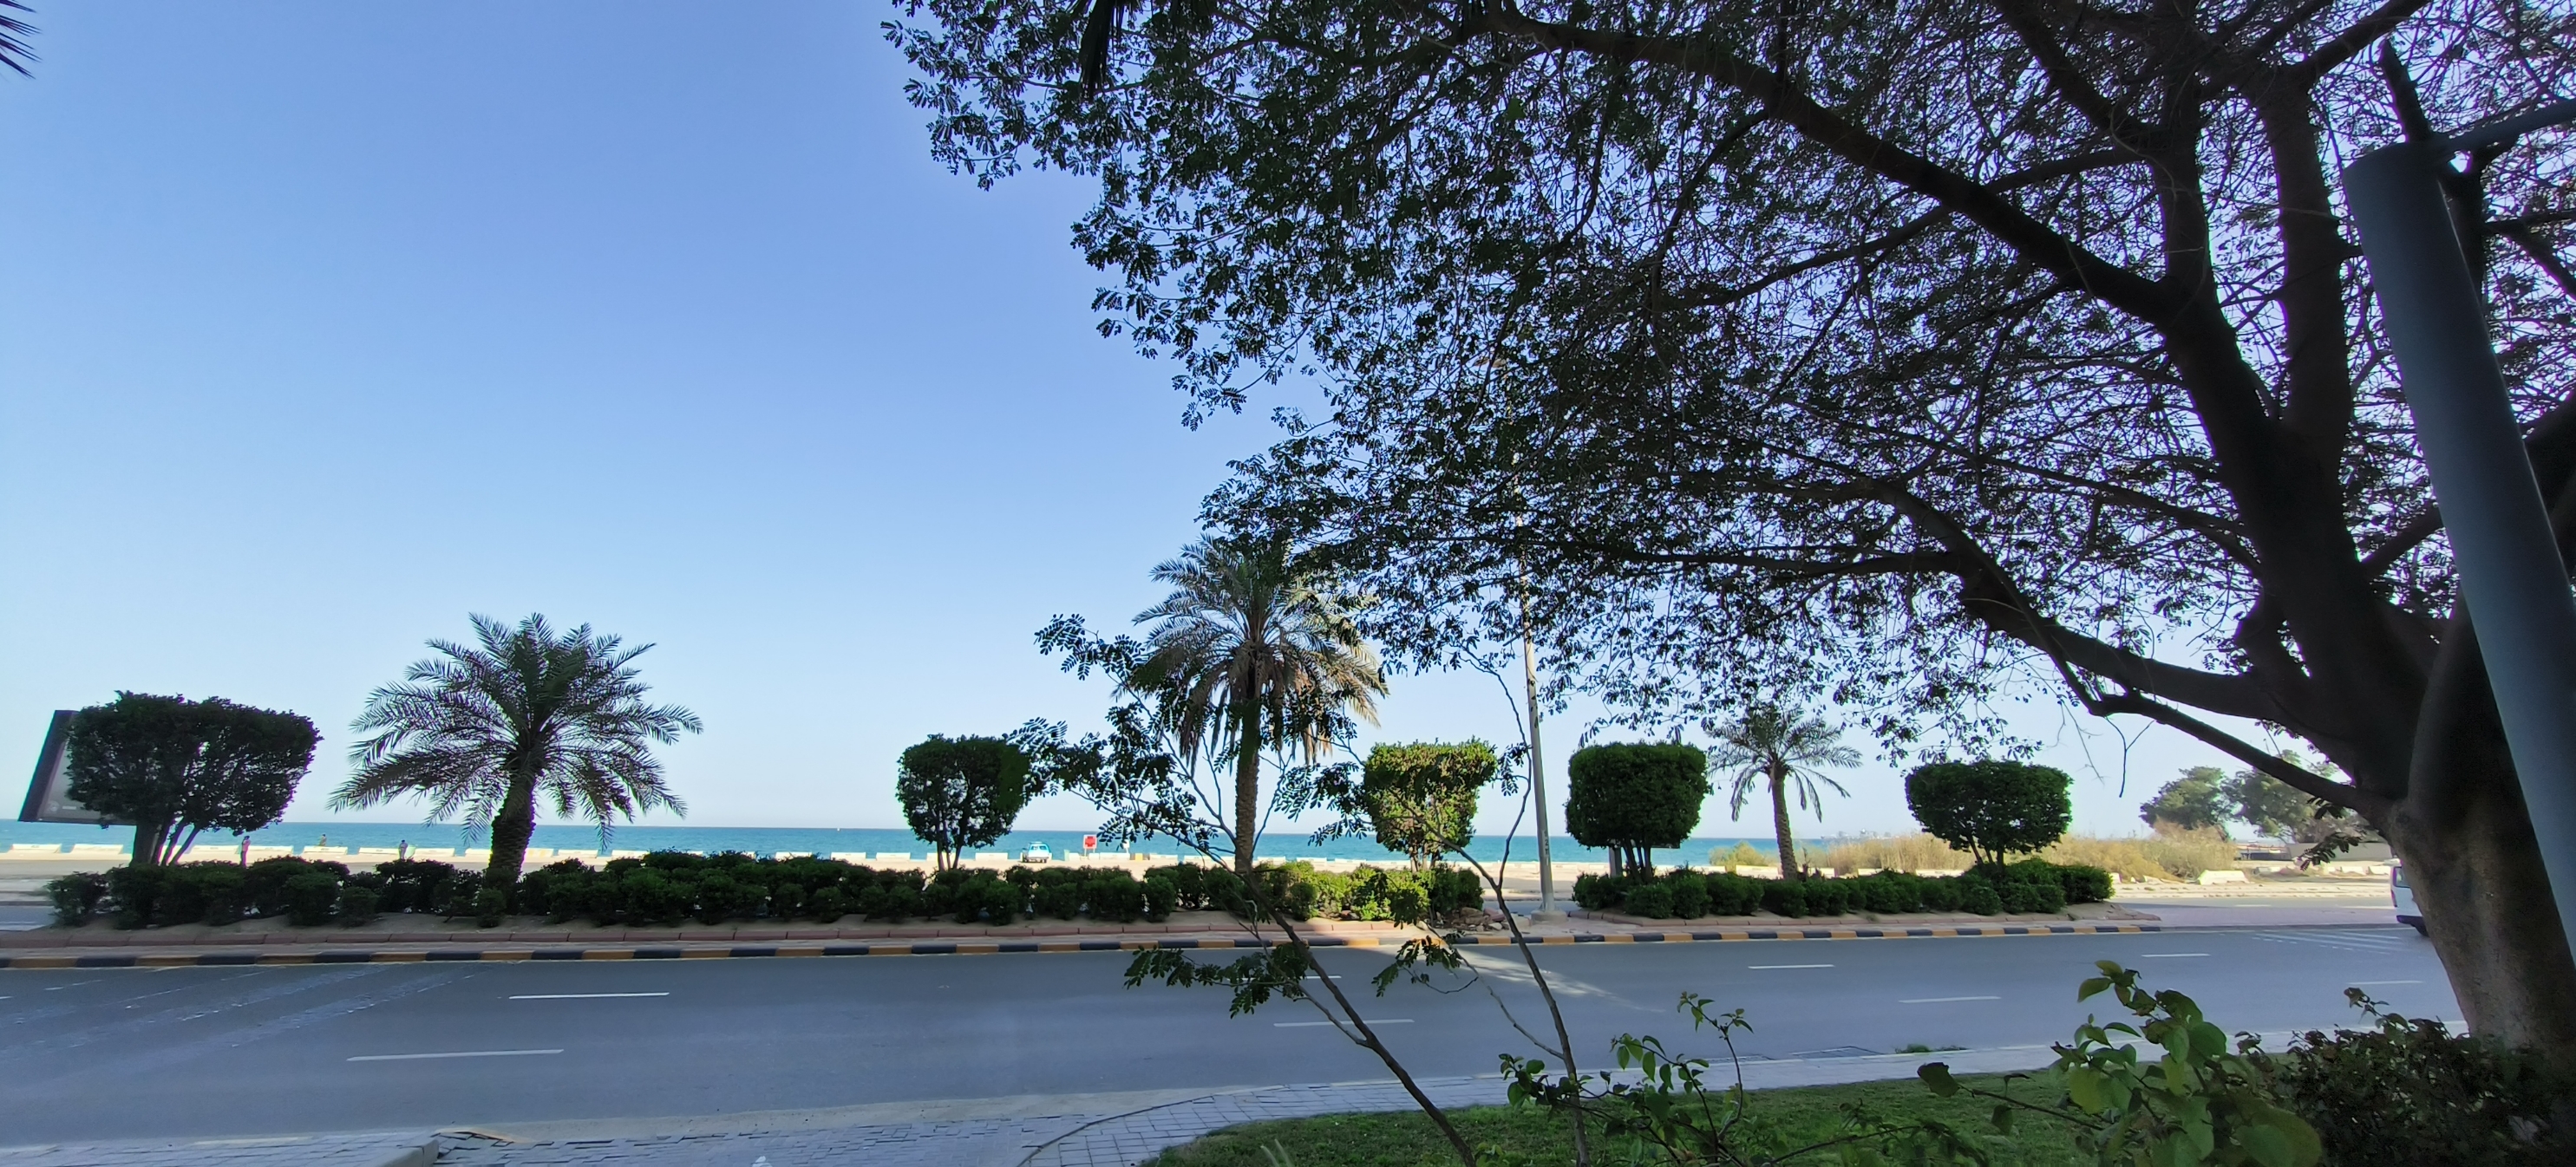 科威特曼卡夫海滩，希尔顿酒店在此安营扎寨，中东浓郁的海湾风情，游艇码头，棕榈树，一派阿拉伯风情。